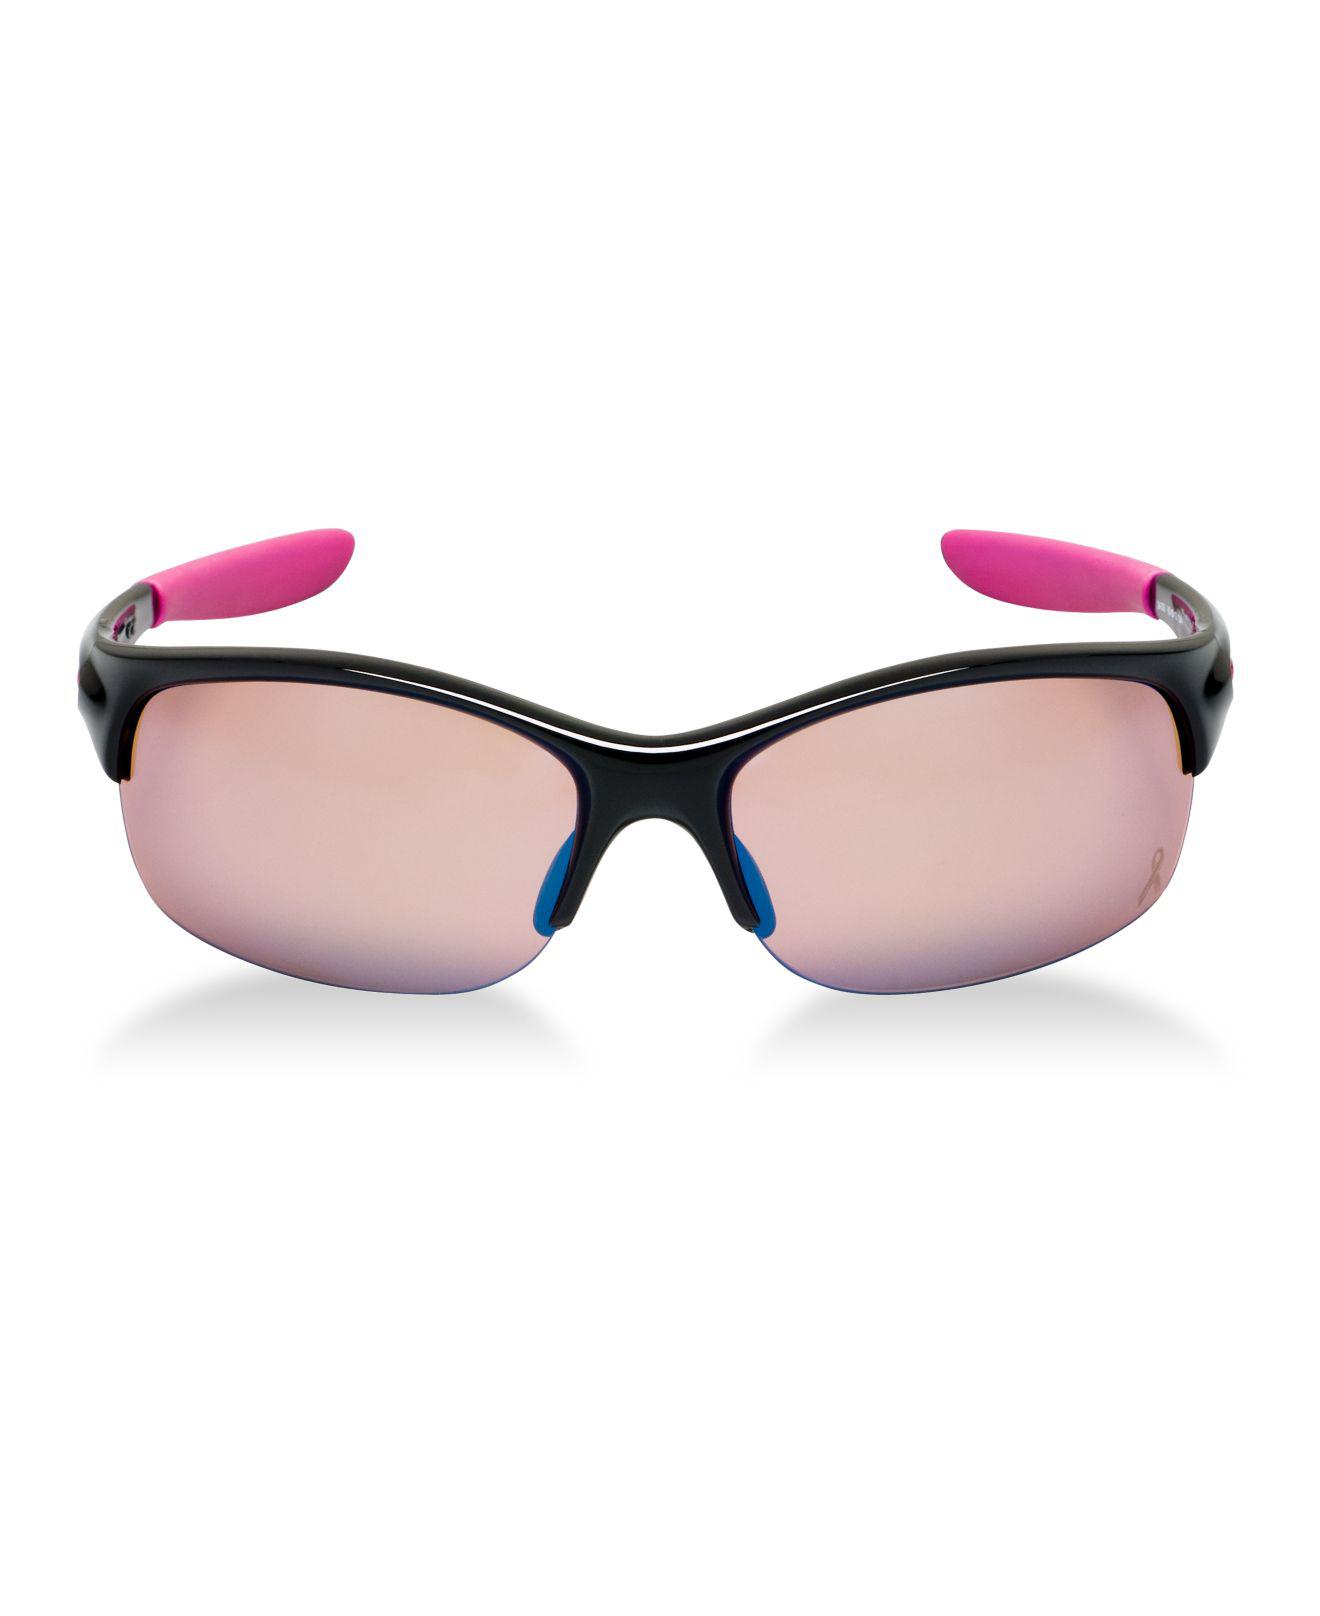 Oakley Women's Sunglasses, Commit Sq Ysc in Pink - Lyst